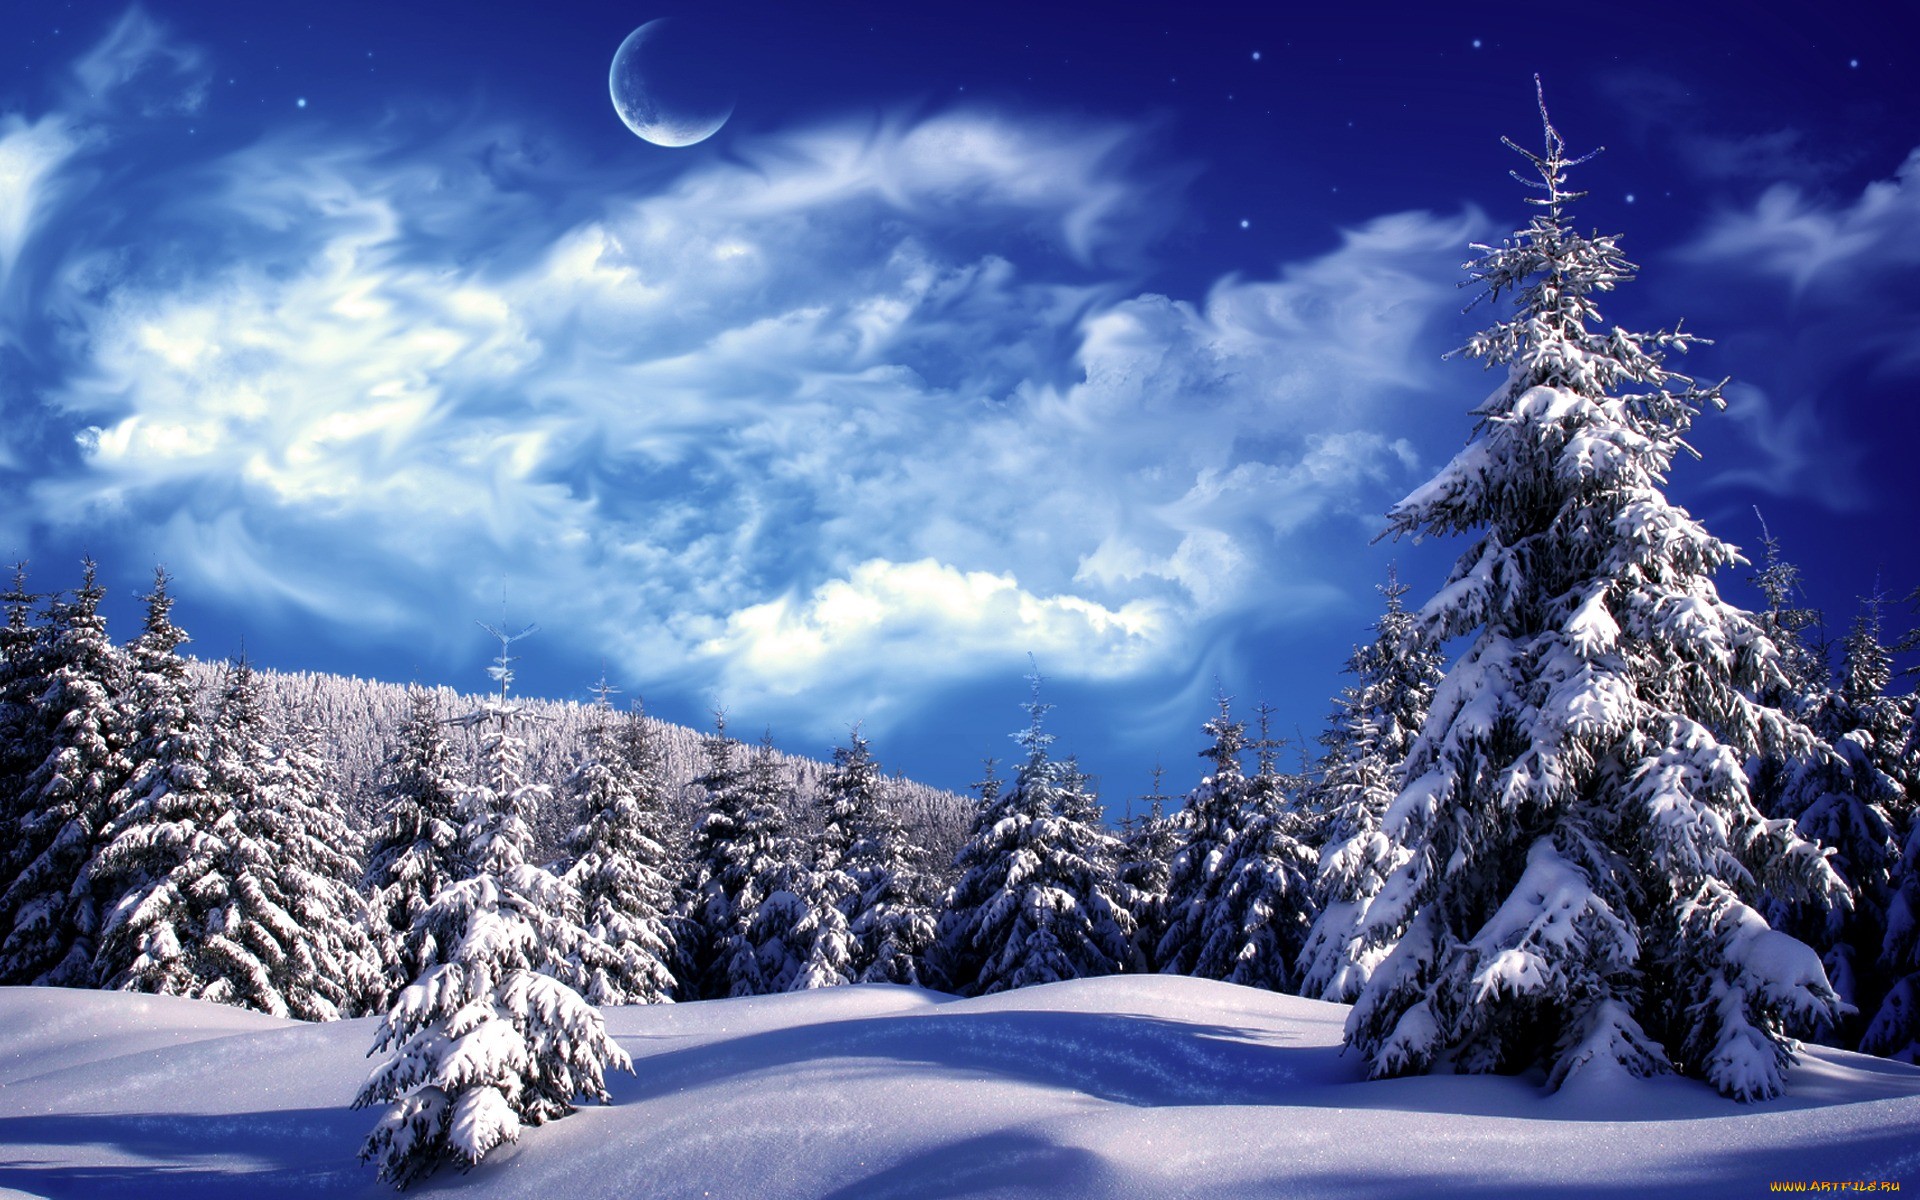 светит якрая луна над зимним лесом обои